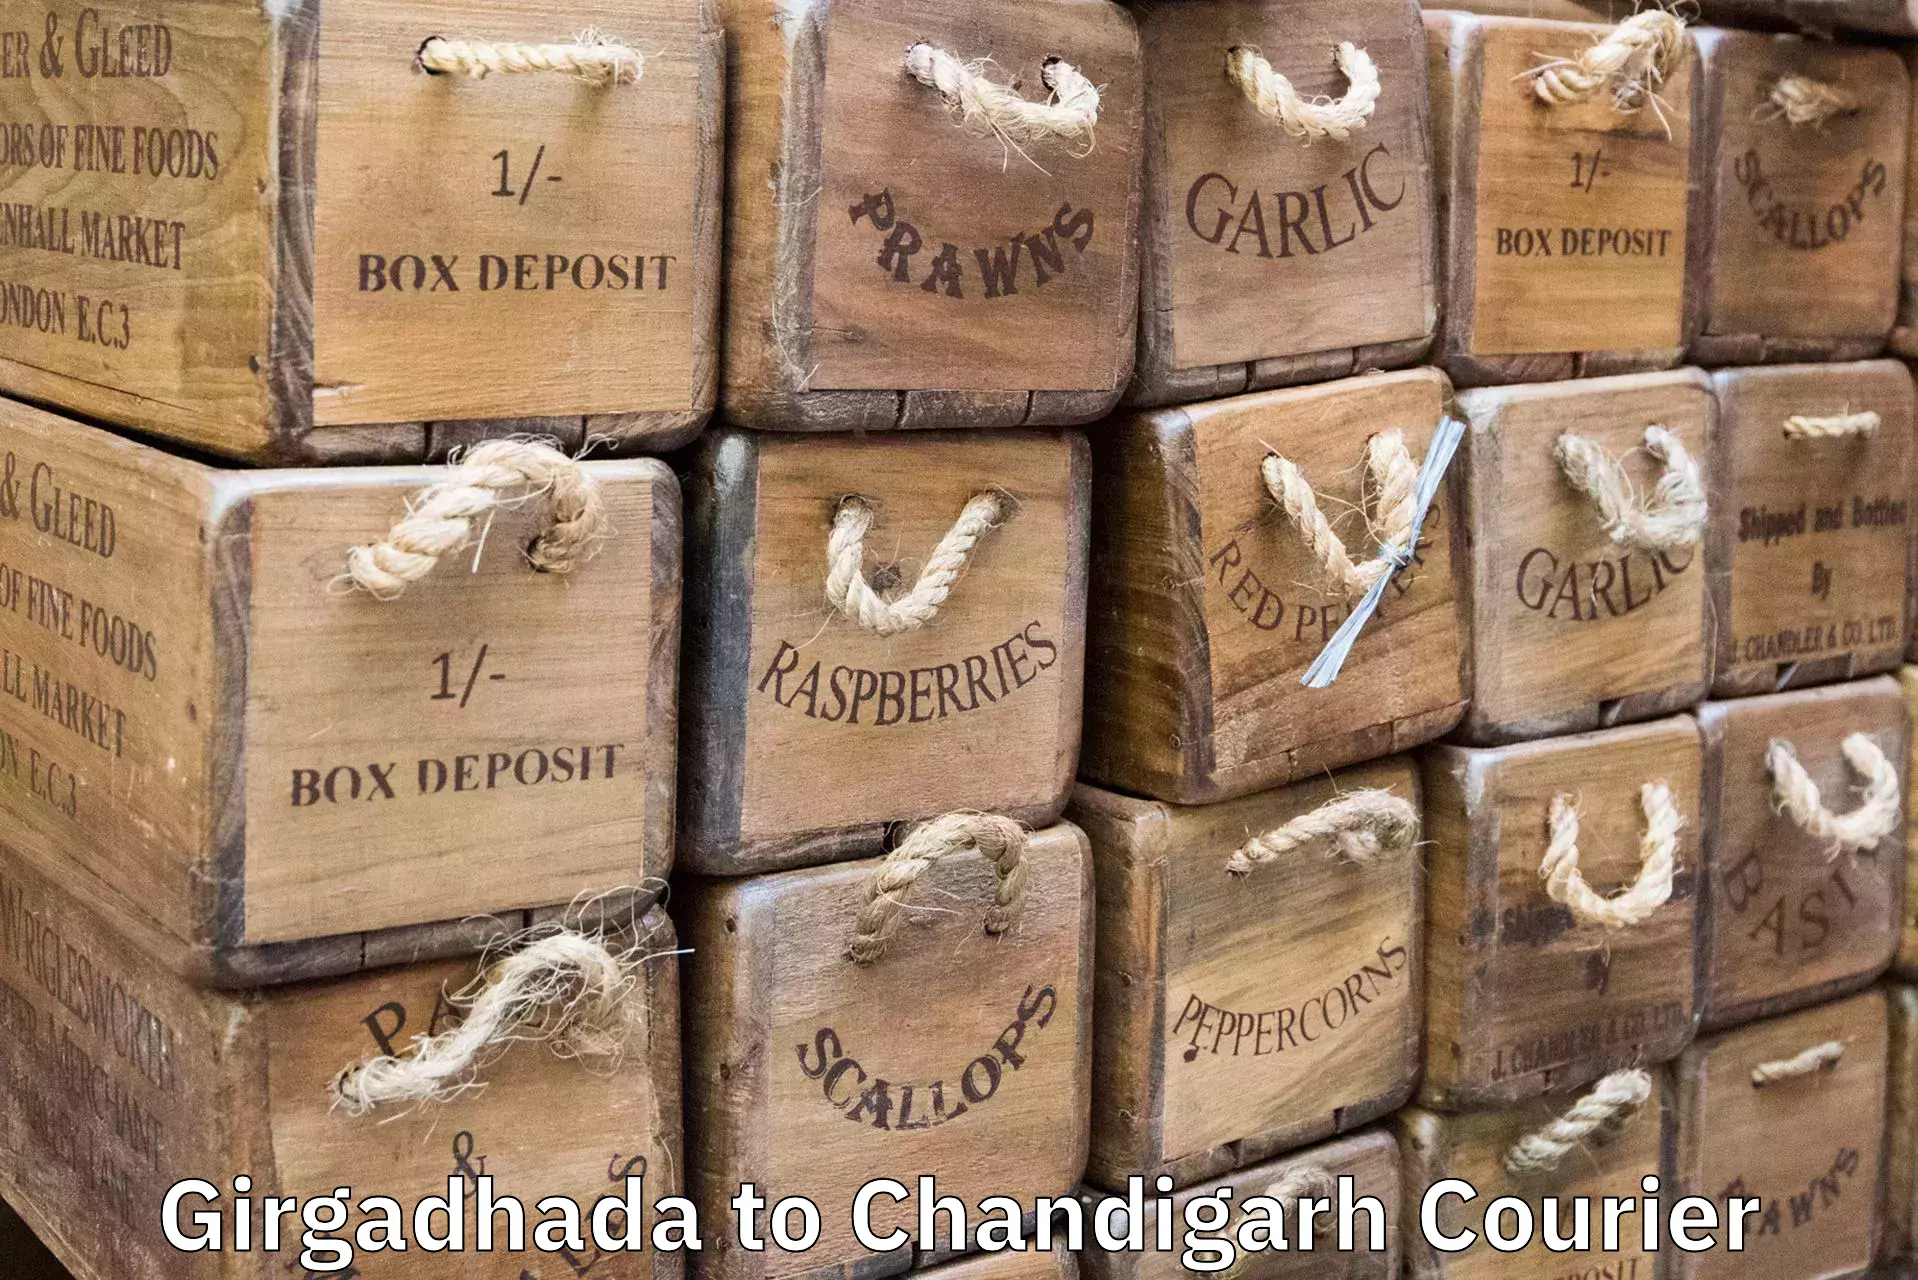 Quick luggage shipment Girgadhada to Chandigarh